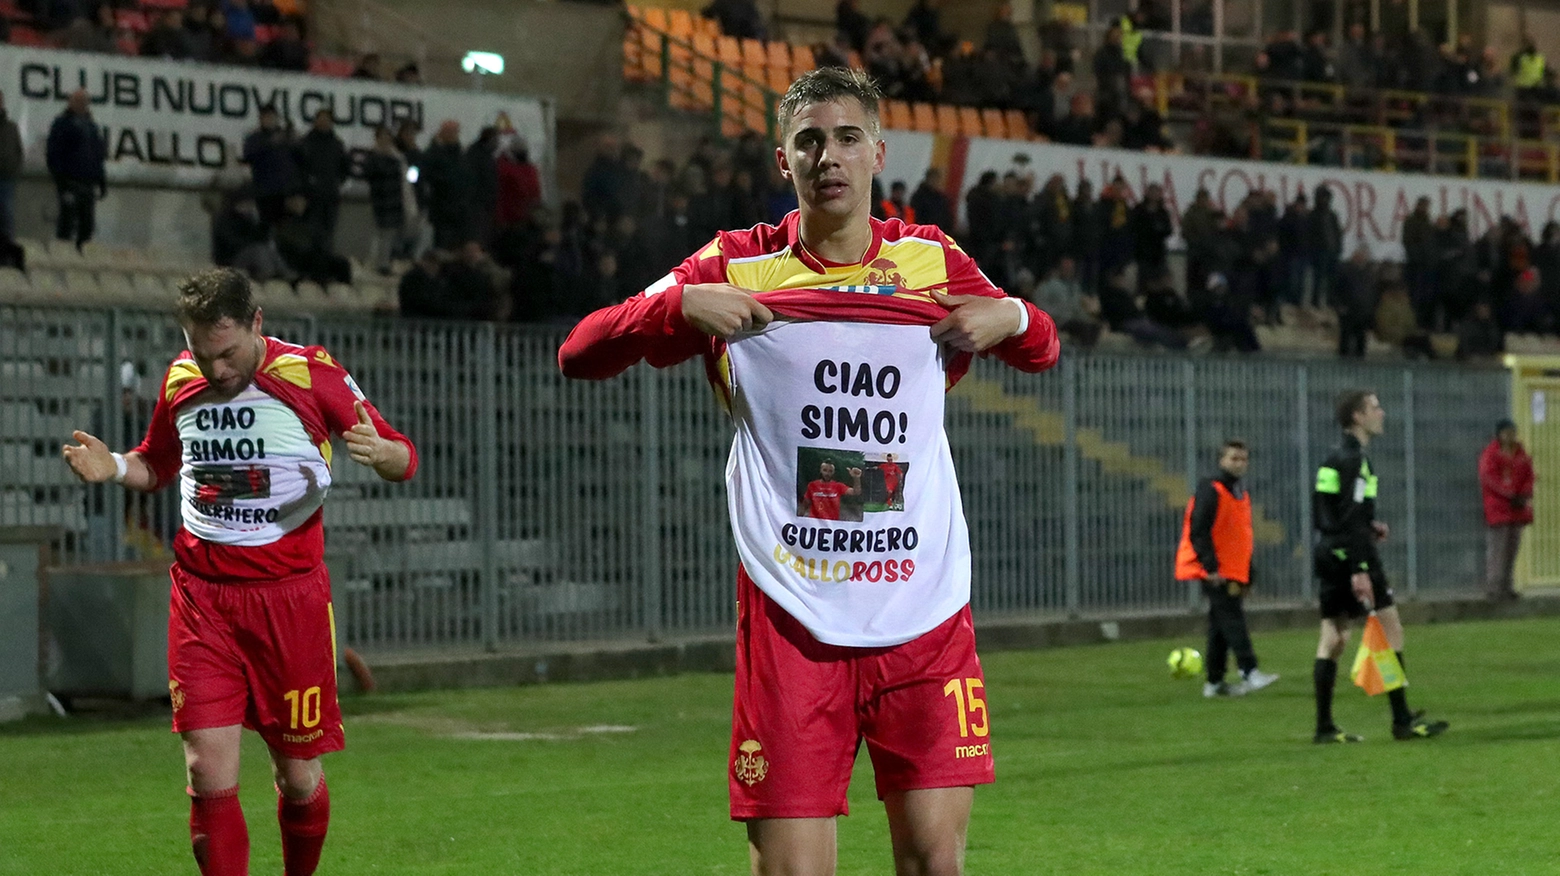 La maglia in ricordo dell'ex capitano giallorosso Simone Rispoli (foto Zani)